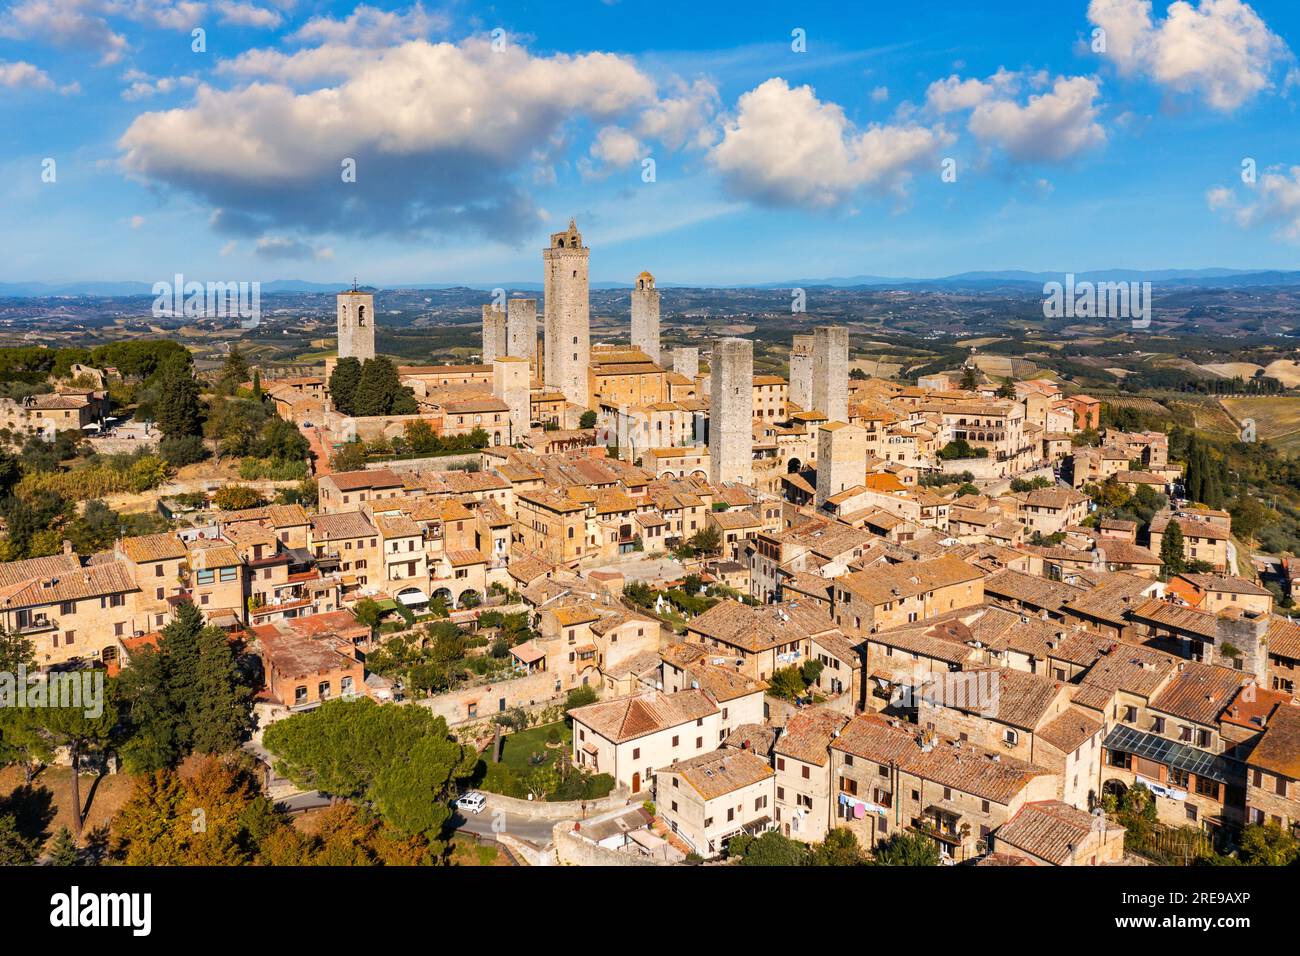 Stadt San Gimignano, Toskana, Italien mit seinen berühmten mittelalterlichen Türmen. Luftaufnahme des mittelalterlichen Dorfes San Gimignano, ein UNESCO-Weltkulturerbe S Stockfoto